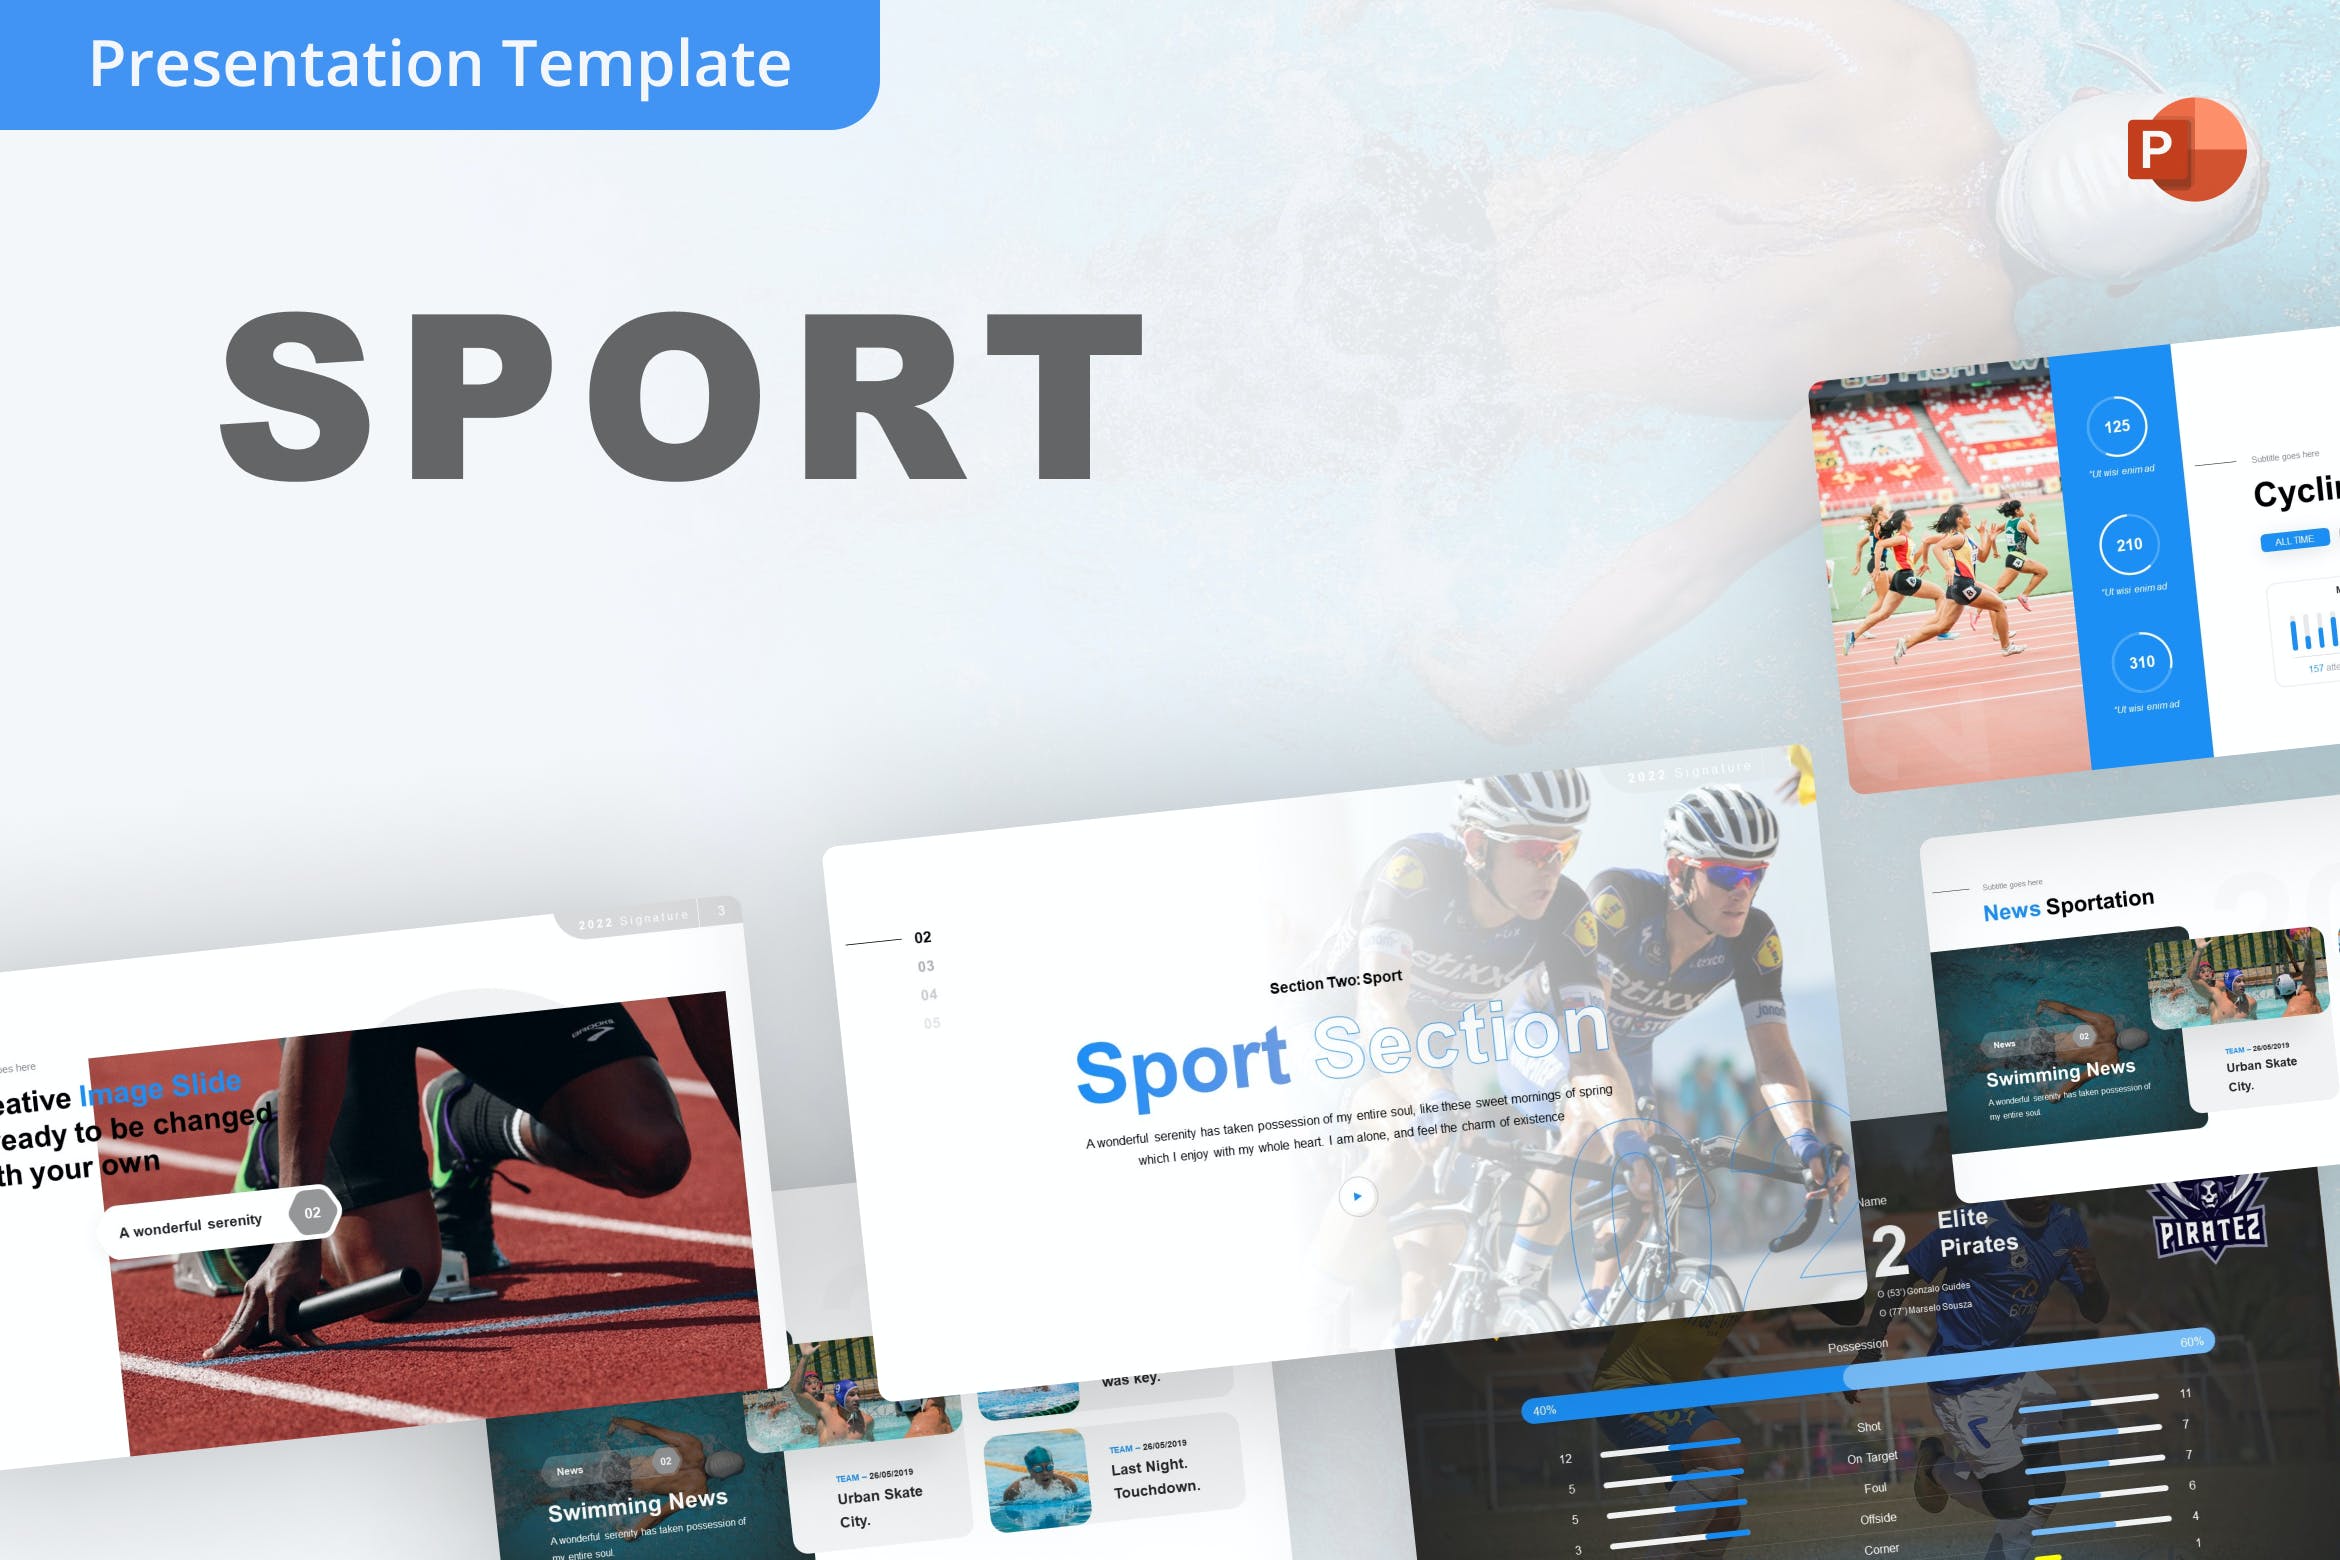 体育运动PowerPoint演示文稿模板 Sport PowerPoint Template 幻灯图表 第1张